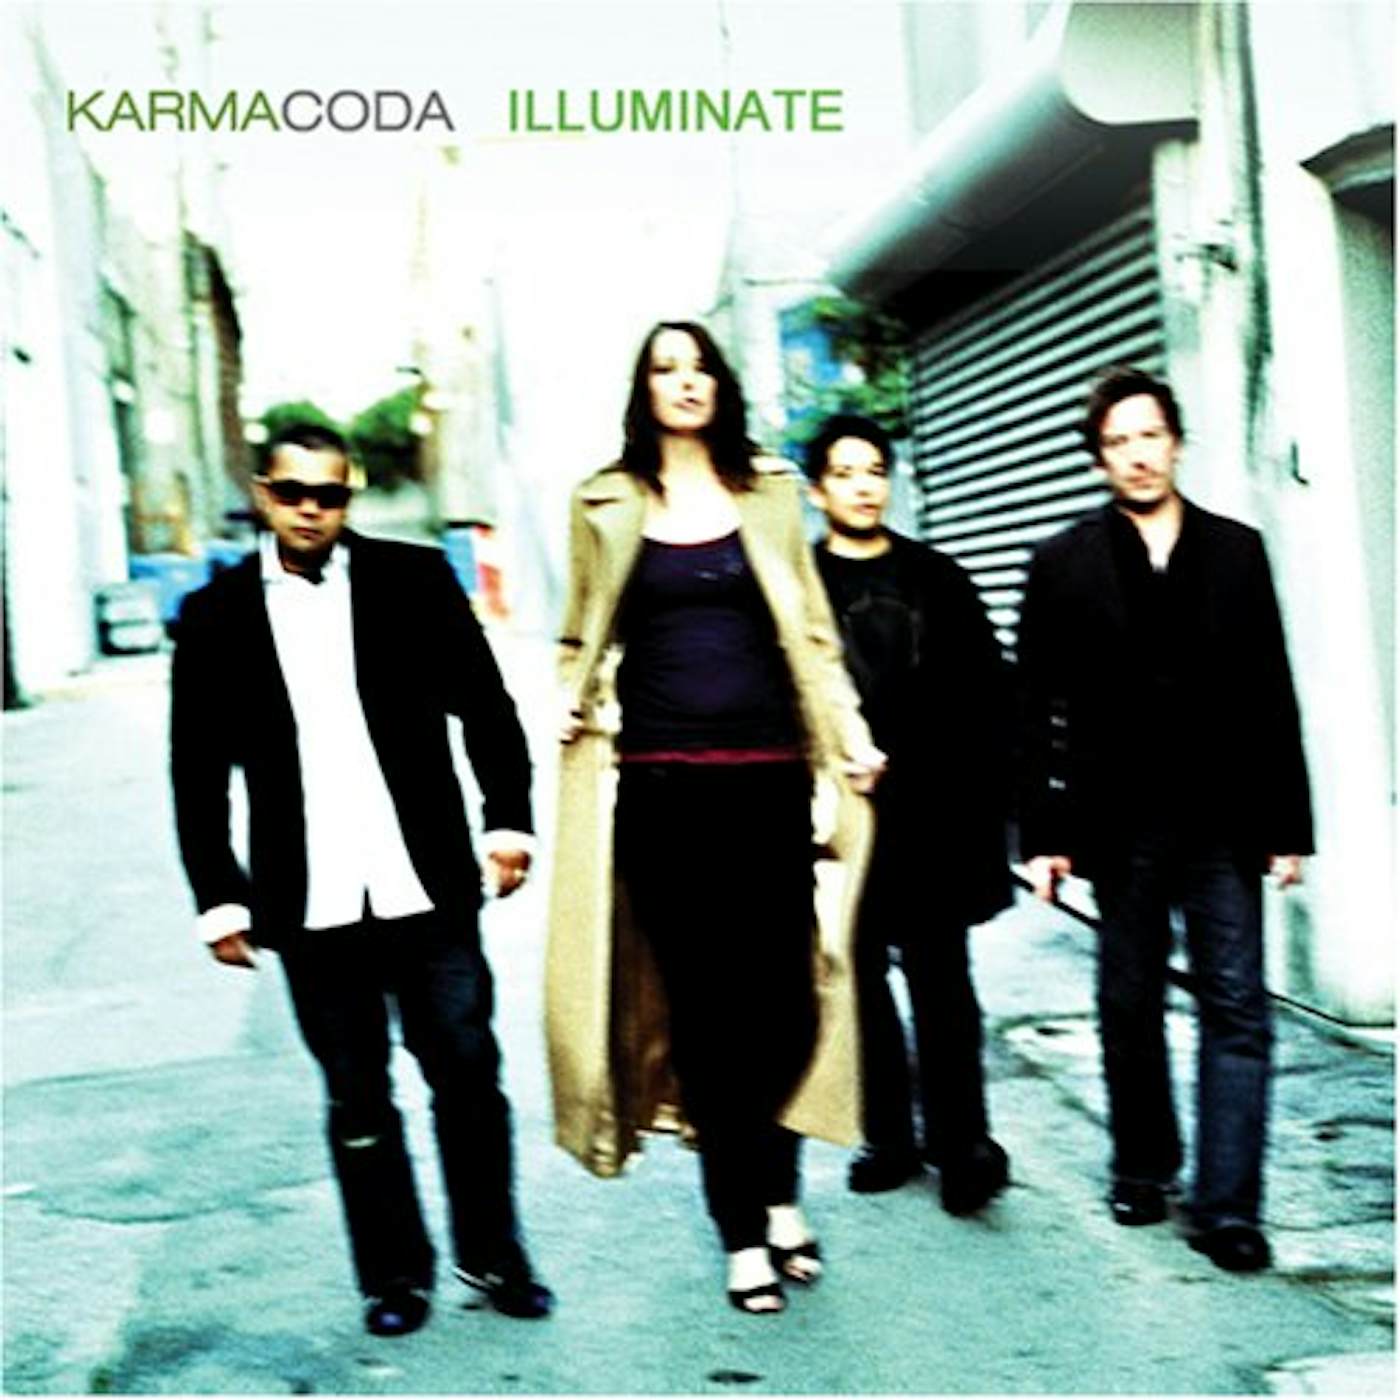 Karmacoda ILLUMINATE CD